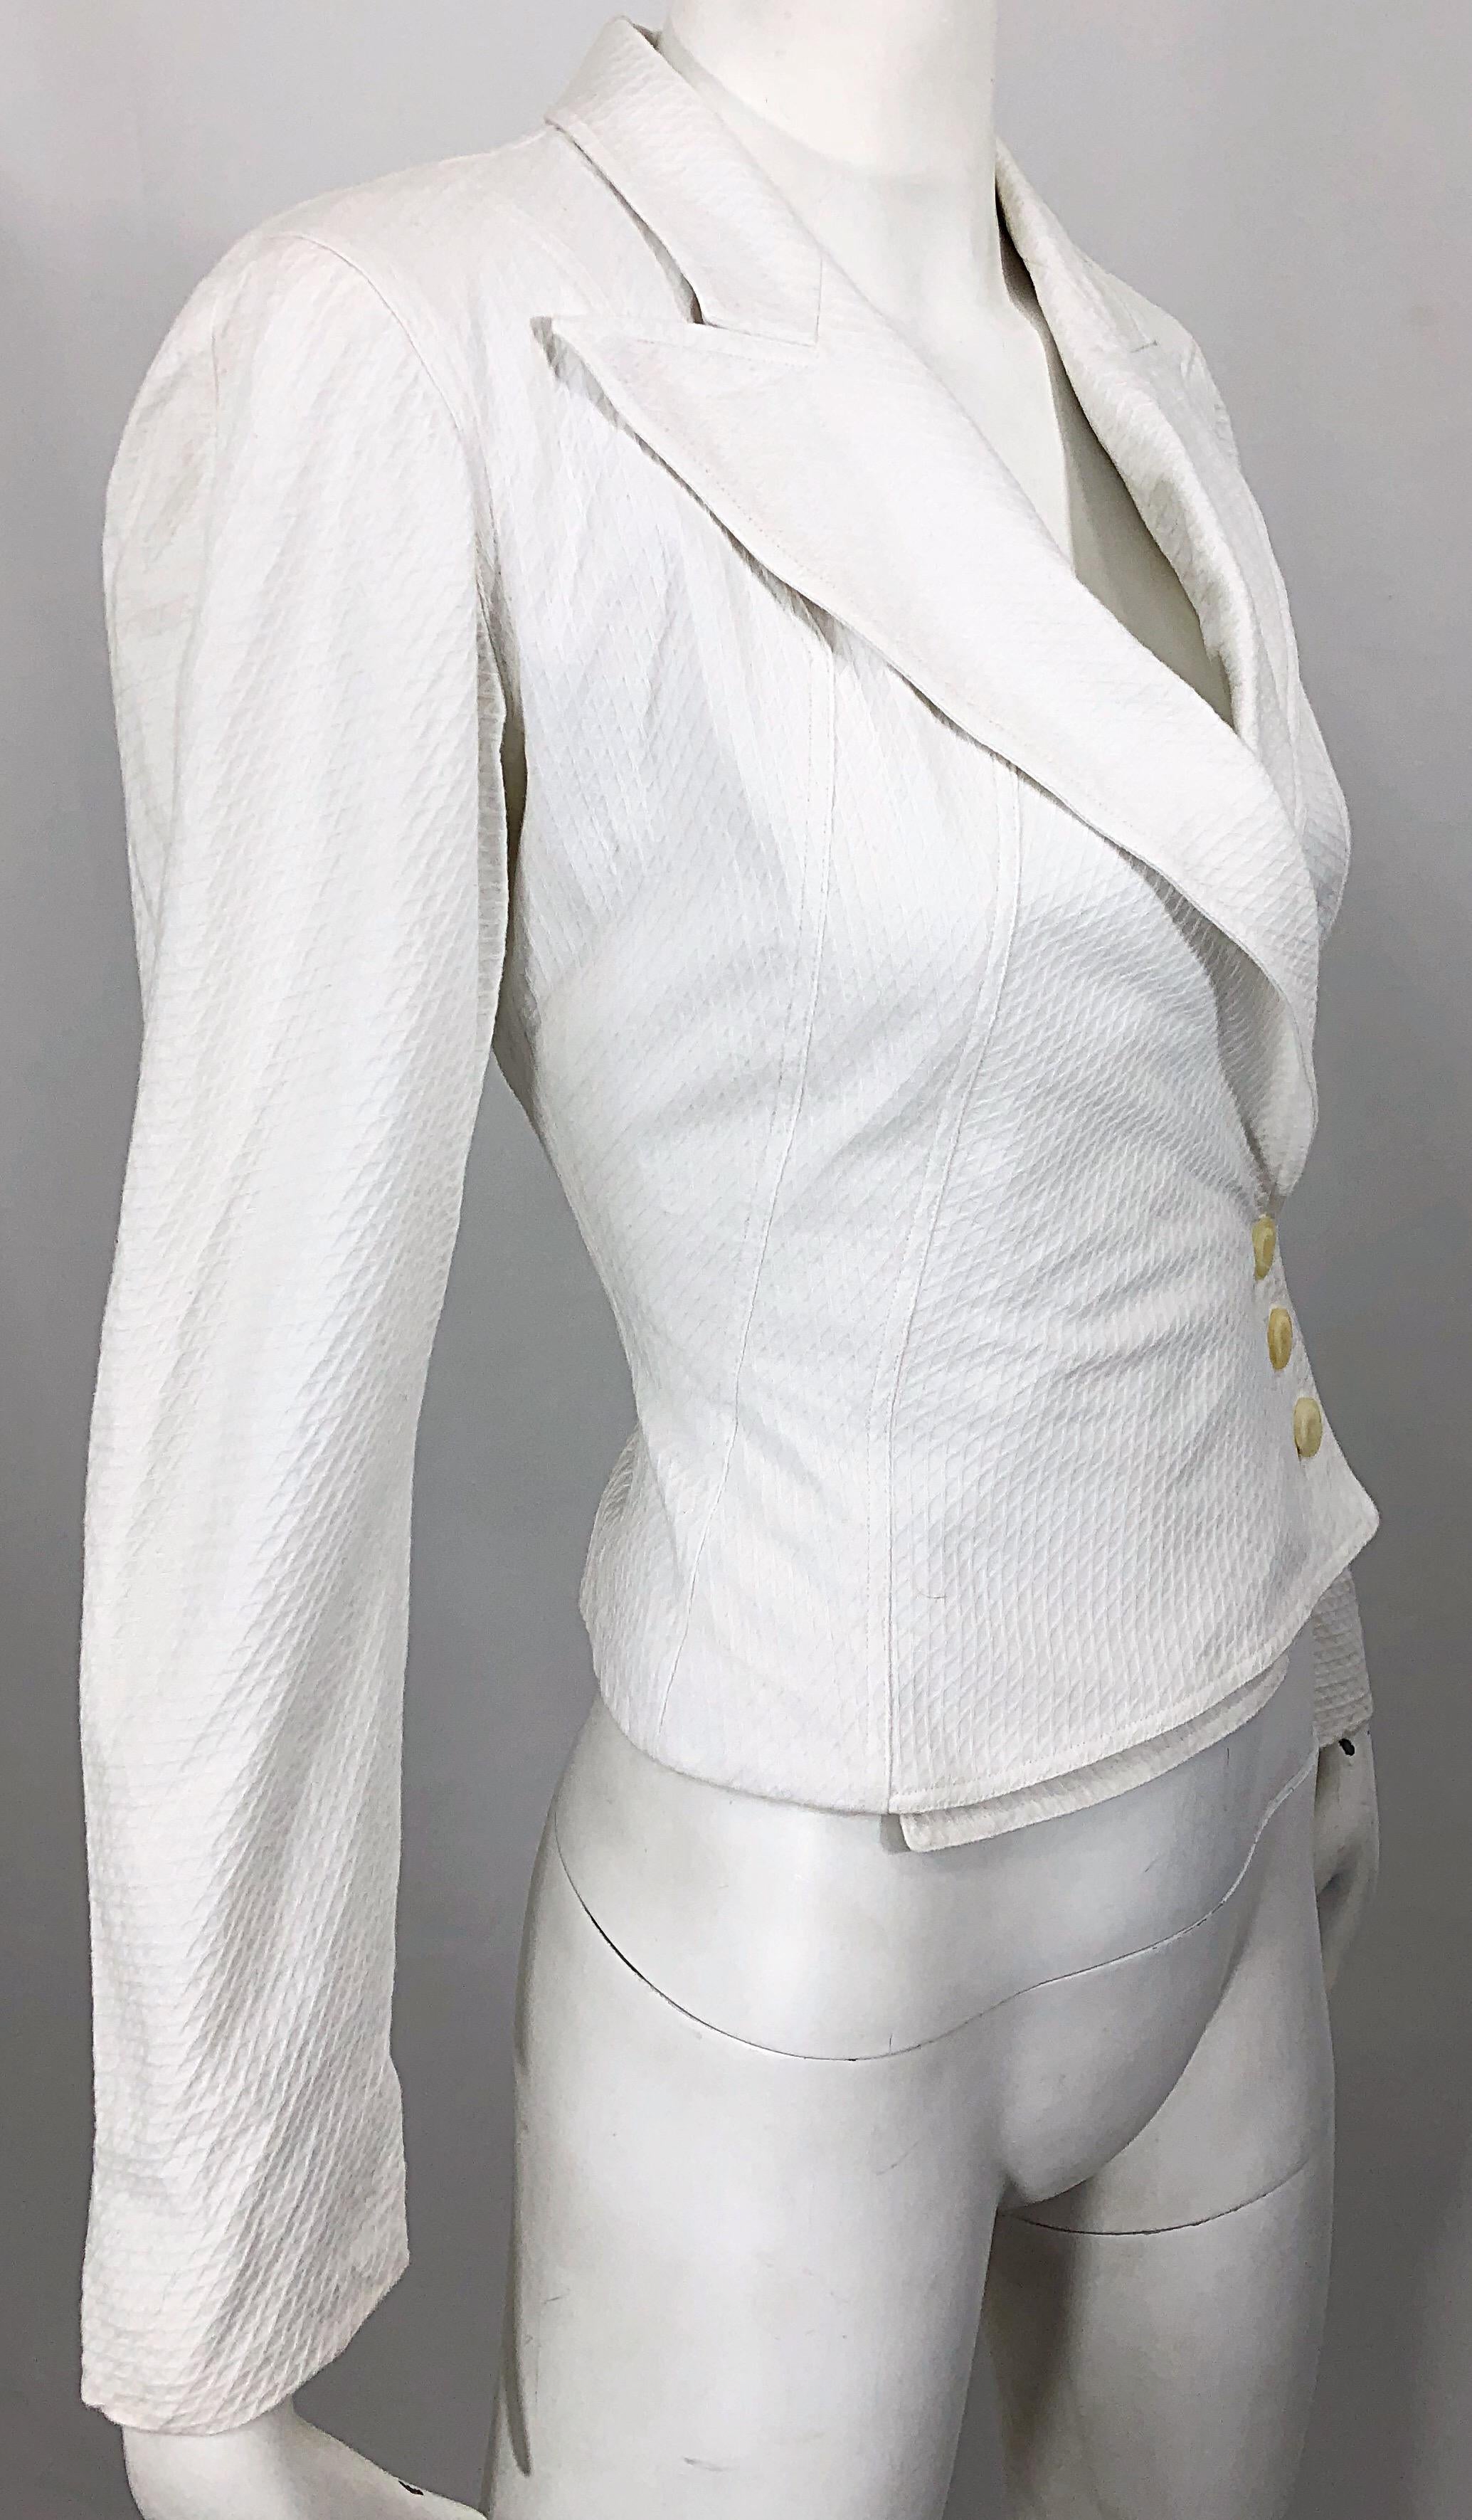 Women's 1980s Azzedine Alaia White Pique Cotton Vintage 80s Cropped Blazer Jacket Size 2 For Sale